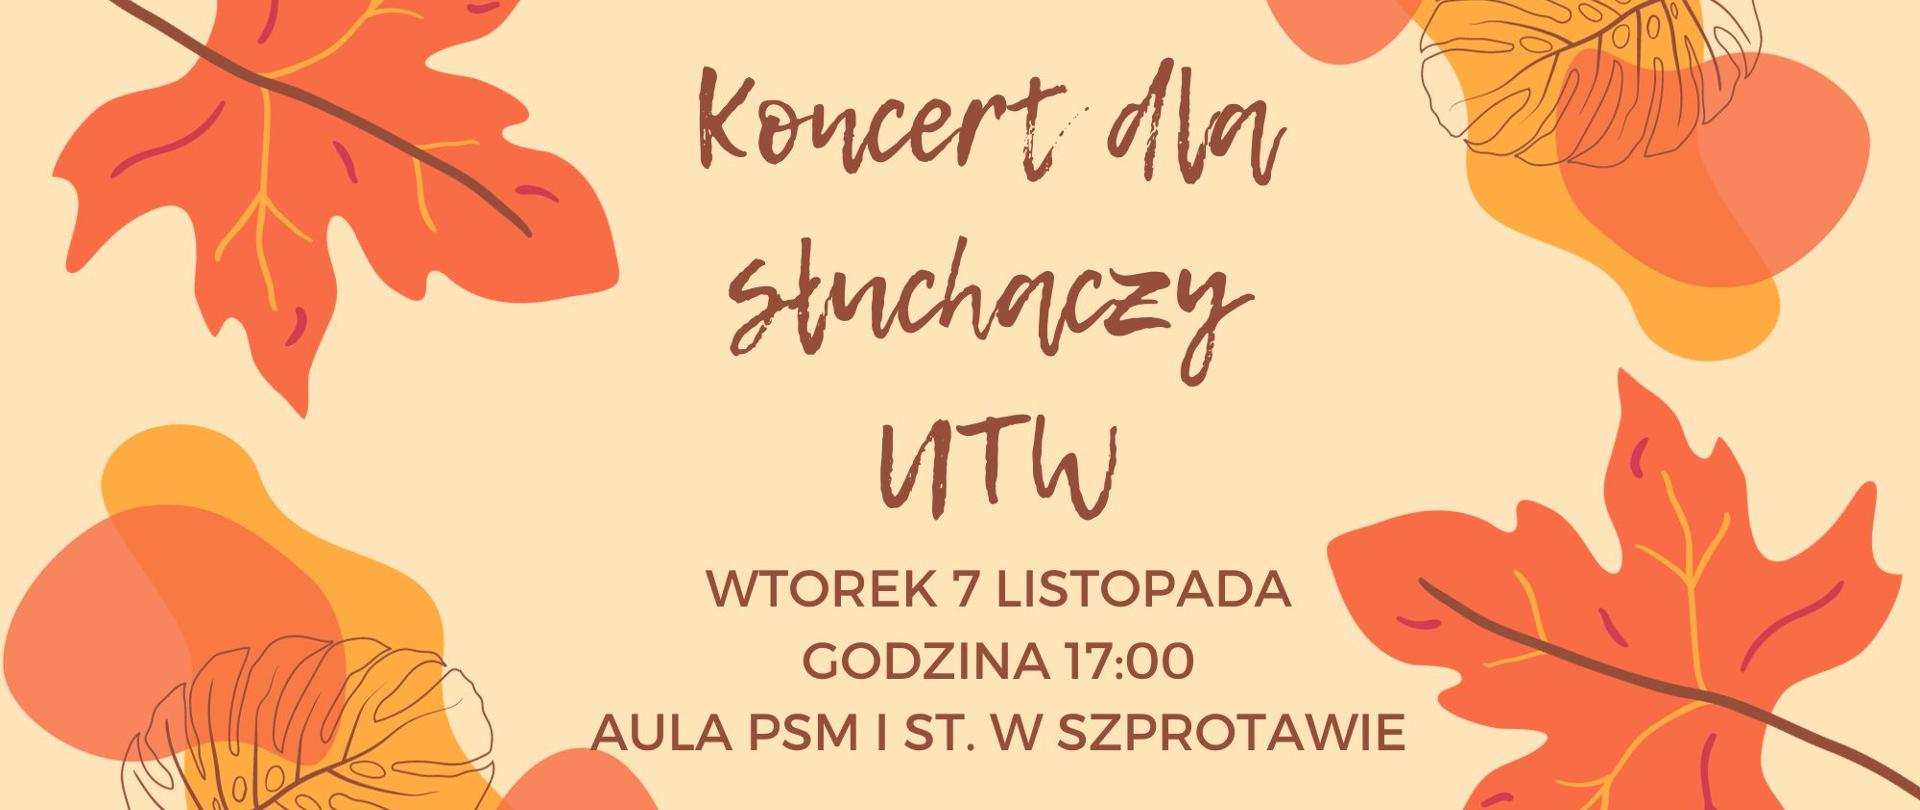 Koncert dla słuchaczy UTW, wtorek 7 listopada, godzina 17:00. aula PSM I st. w Szprotawie. 